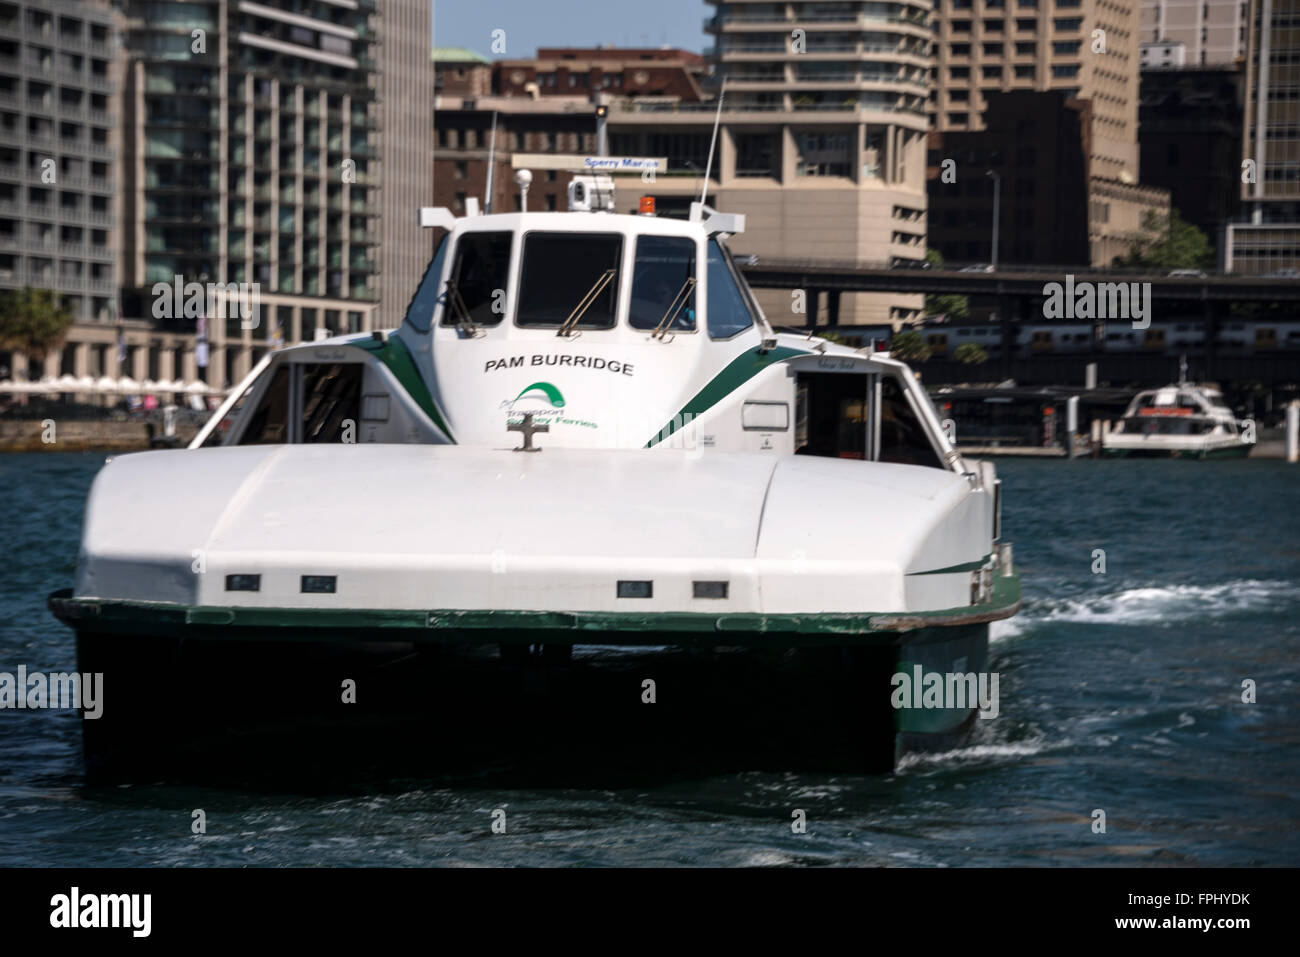 Ein Sydney Pendler Riverboat (Katamaran) erbringt eine öffentliche Dienstleistung im Großraum Sydney Hafen, wie es Circular Quay in Syd Blätter Stockfoto